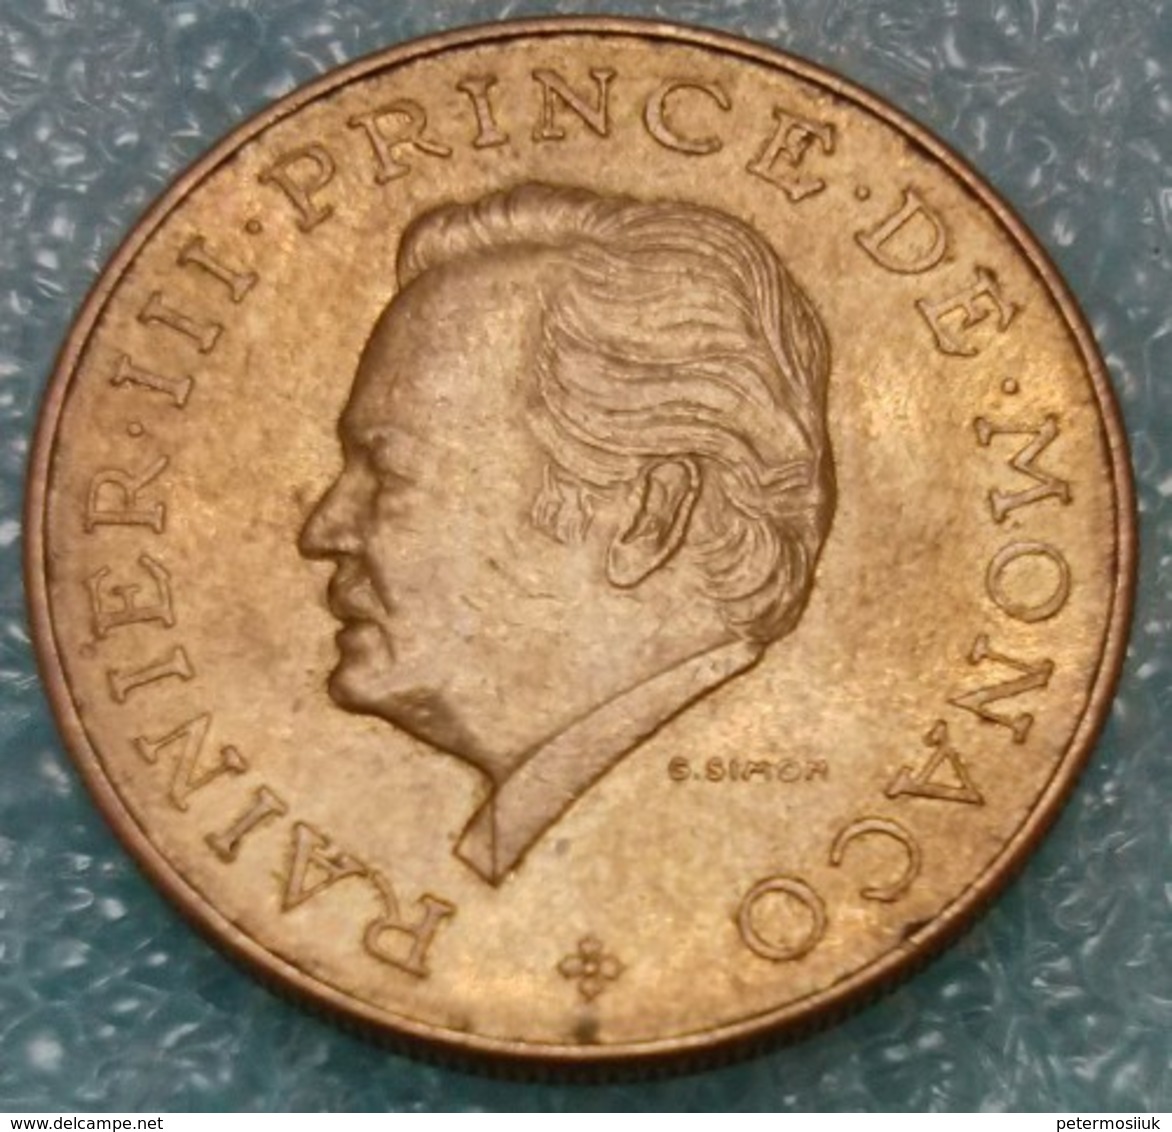 Monaco 10 Francs, 1981 -0815 - 1960-2001 New Francs